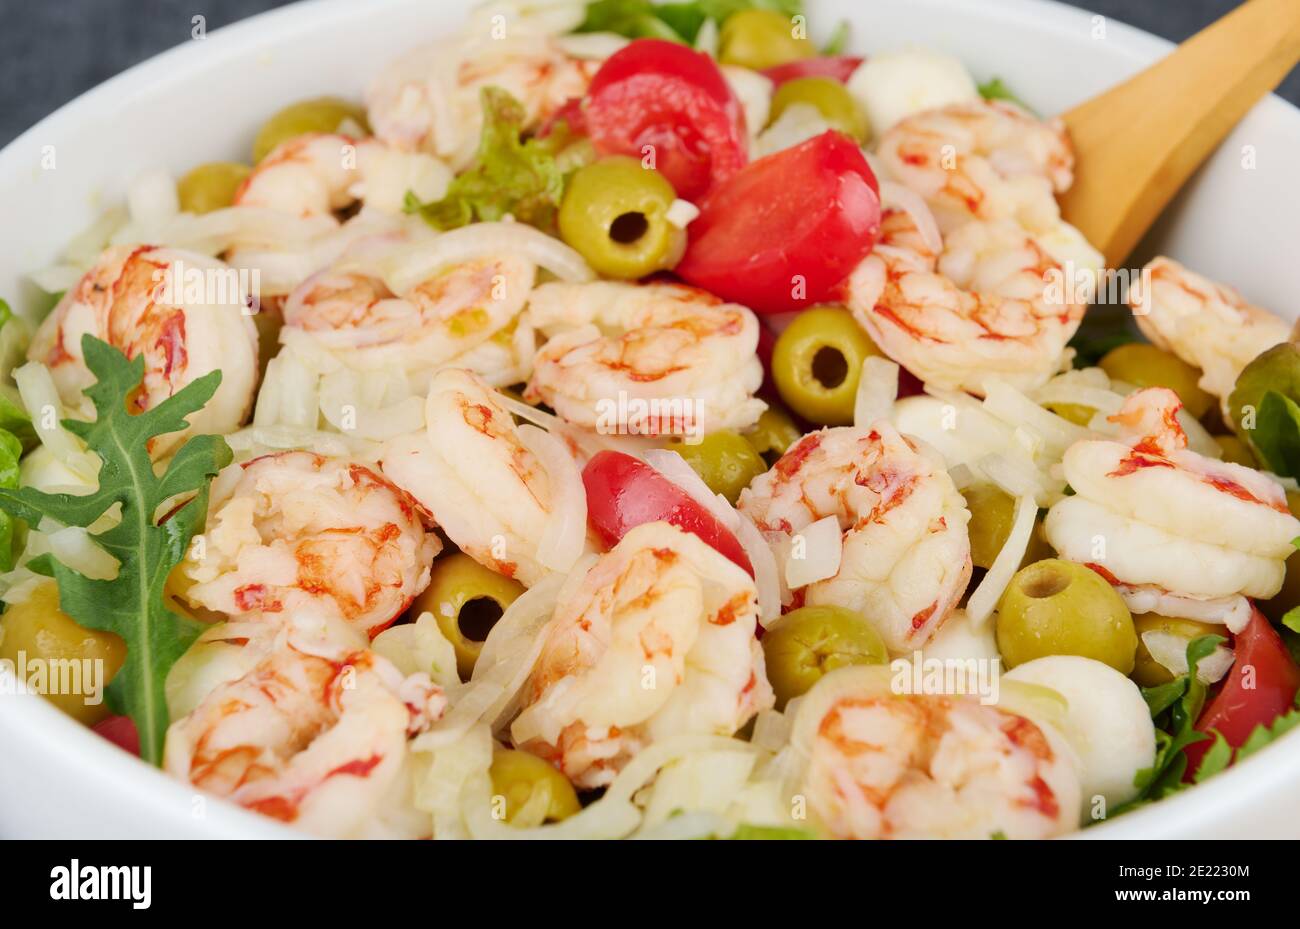 Salade délicieuse avec crevettes, olives, mozzarella, tomates et sauce à l'huile d'olive, gros plan, faible profondeur de la netteté Banque D'Images